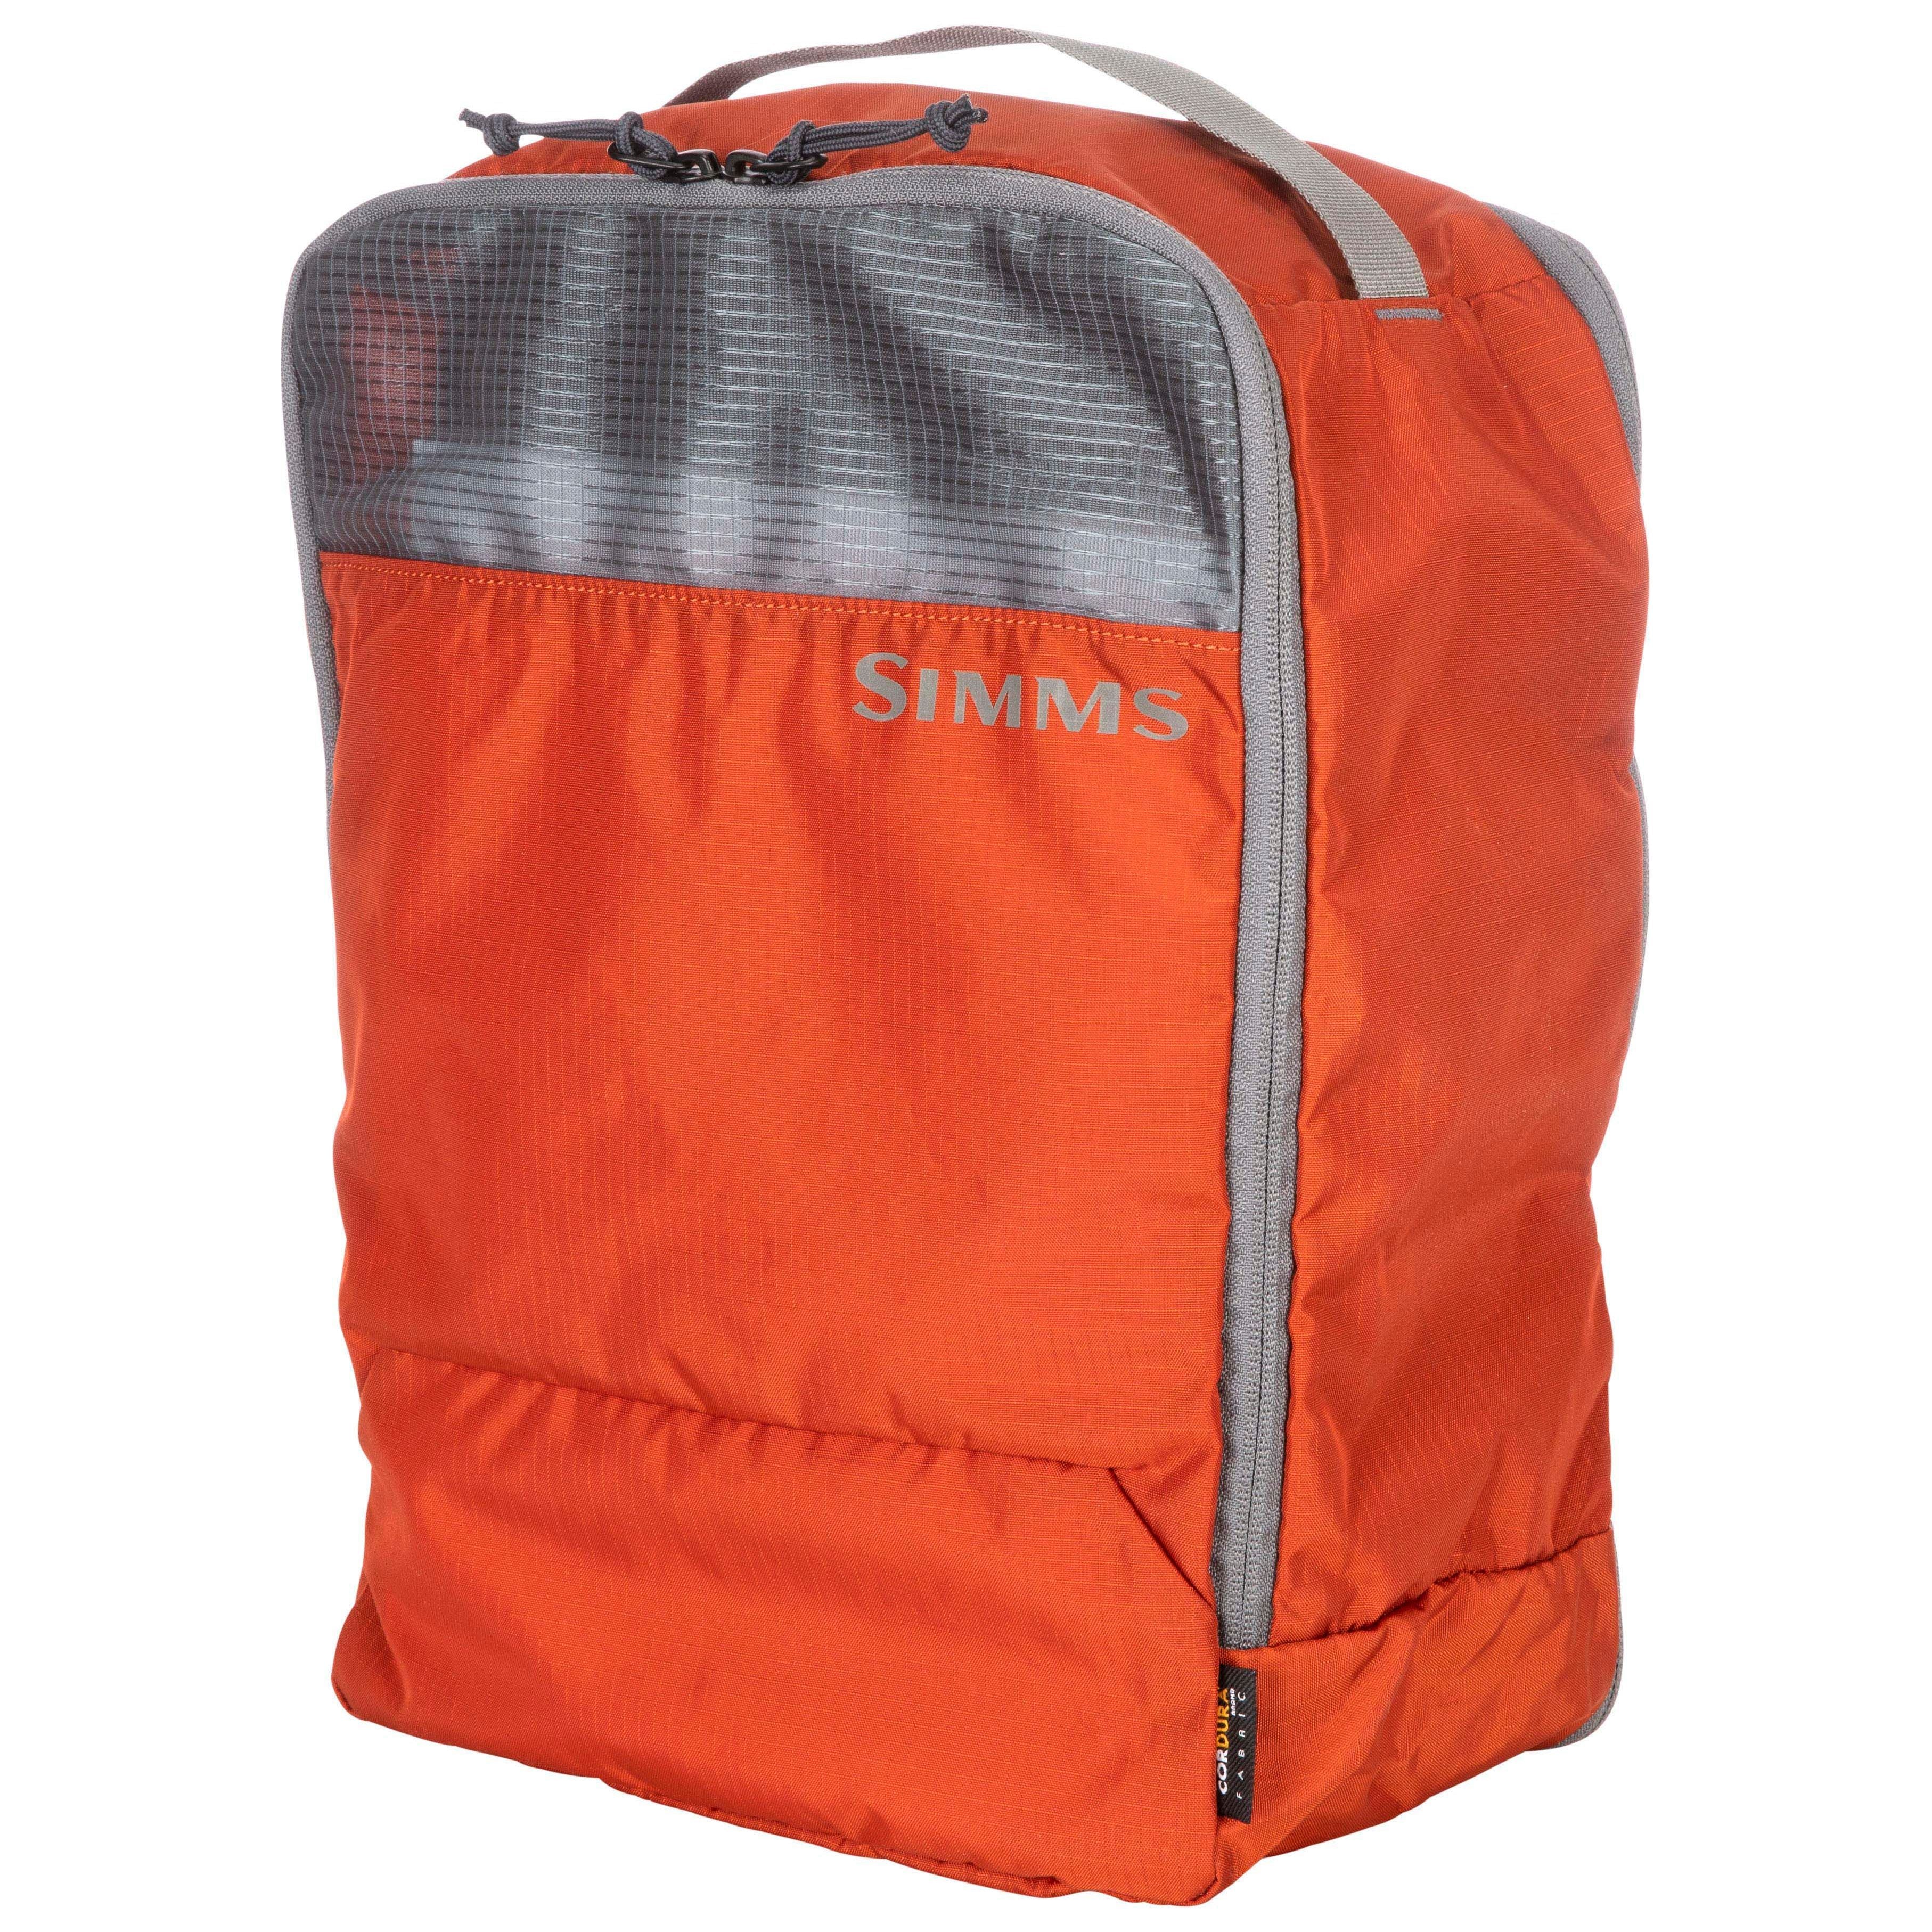 Simms GTS Packing Kit - 3-Pack Simms Orange Image 01